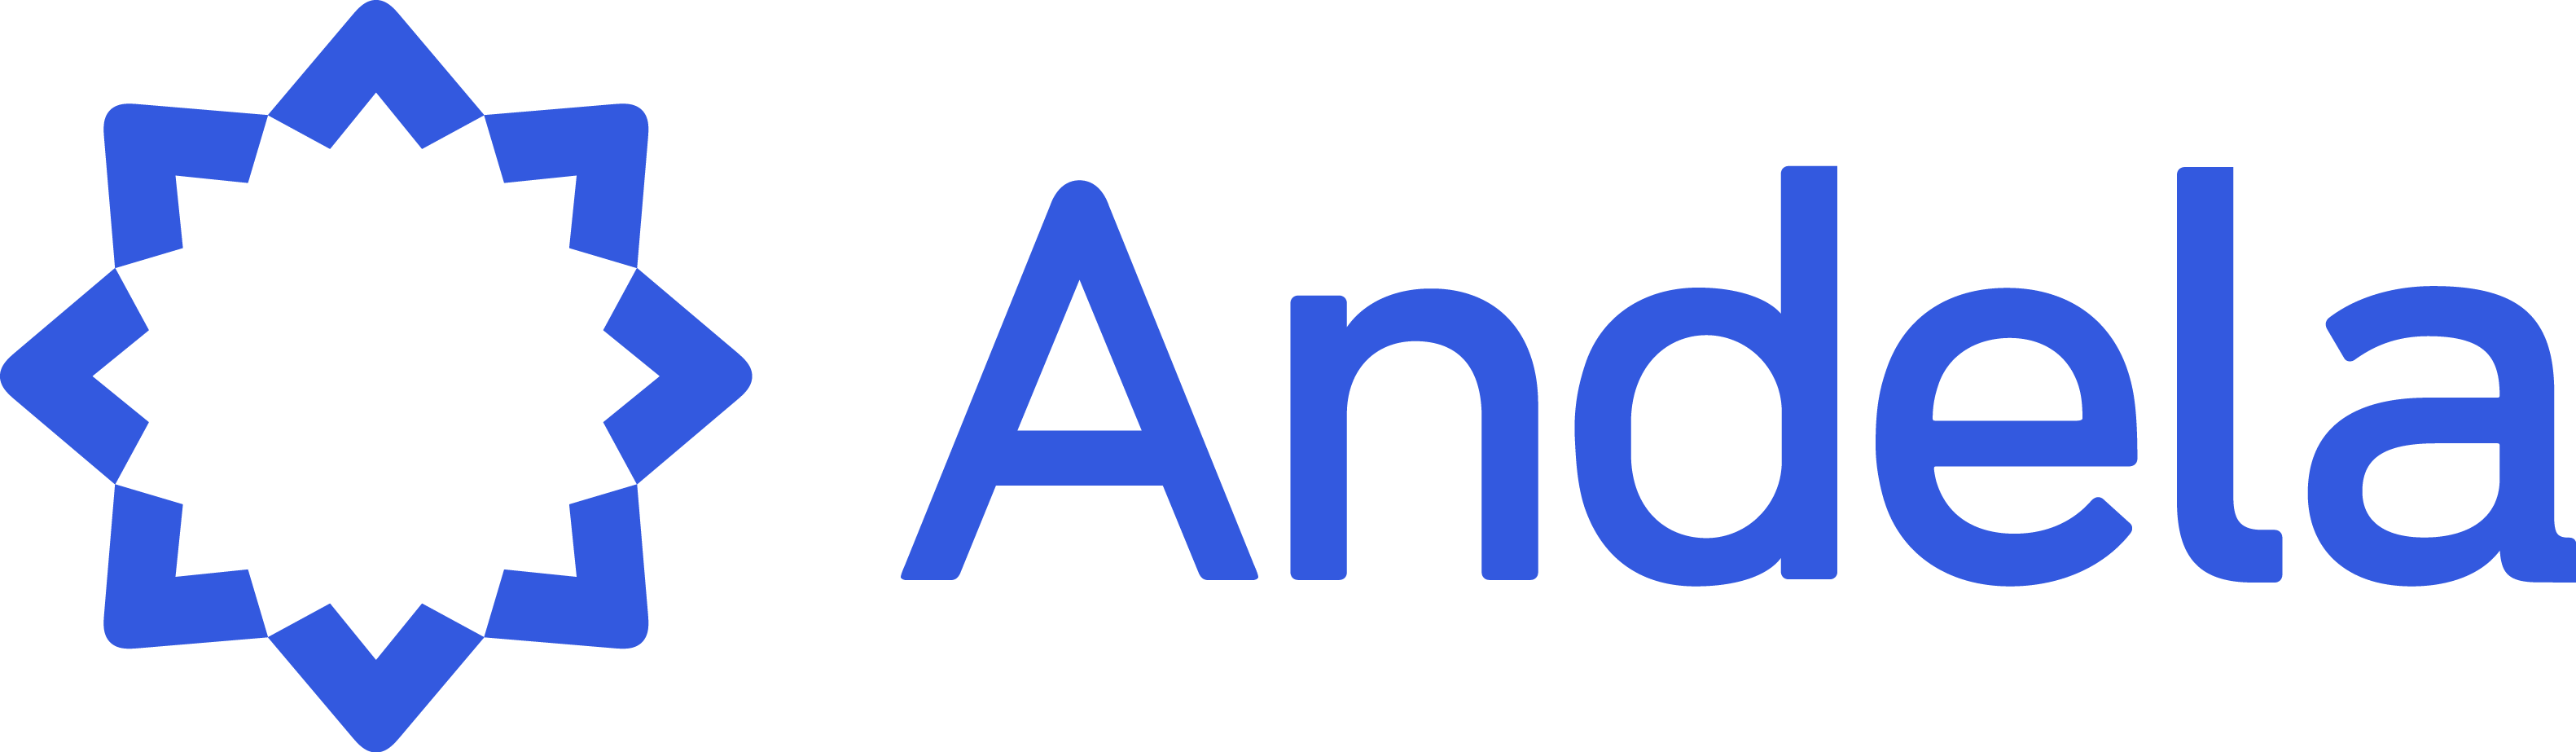 Andela-logo